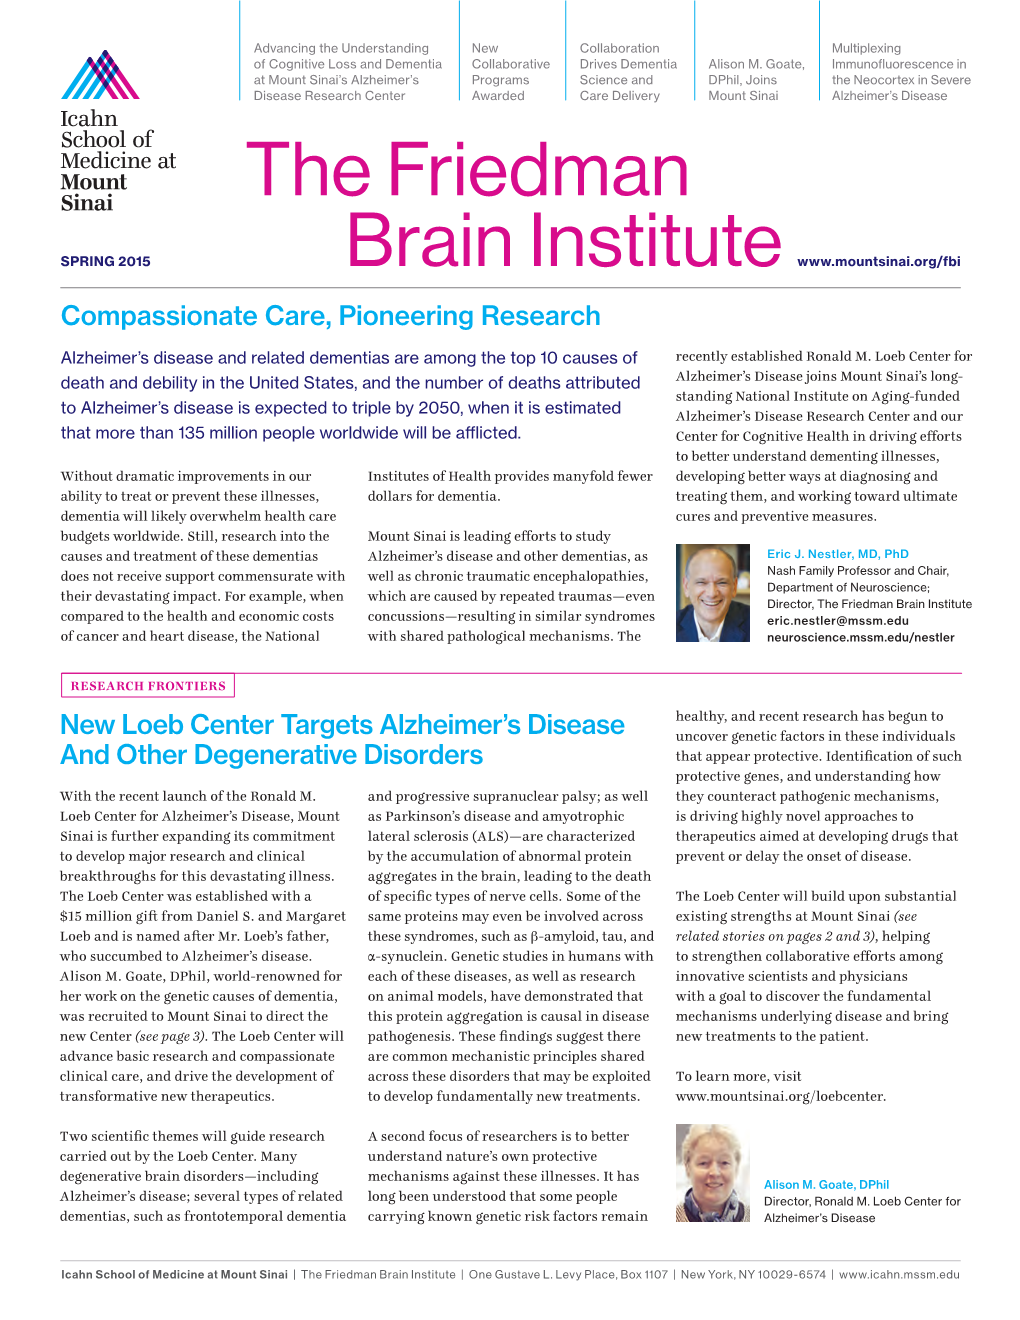 The Friedman Brain Institute